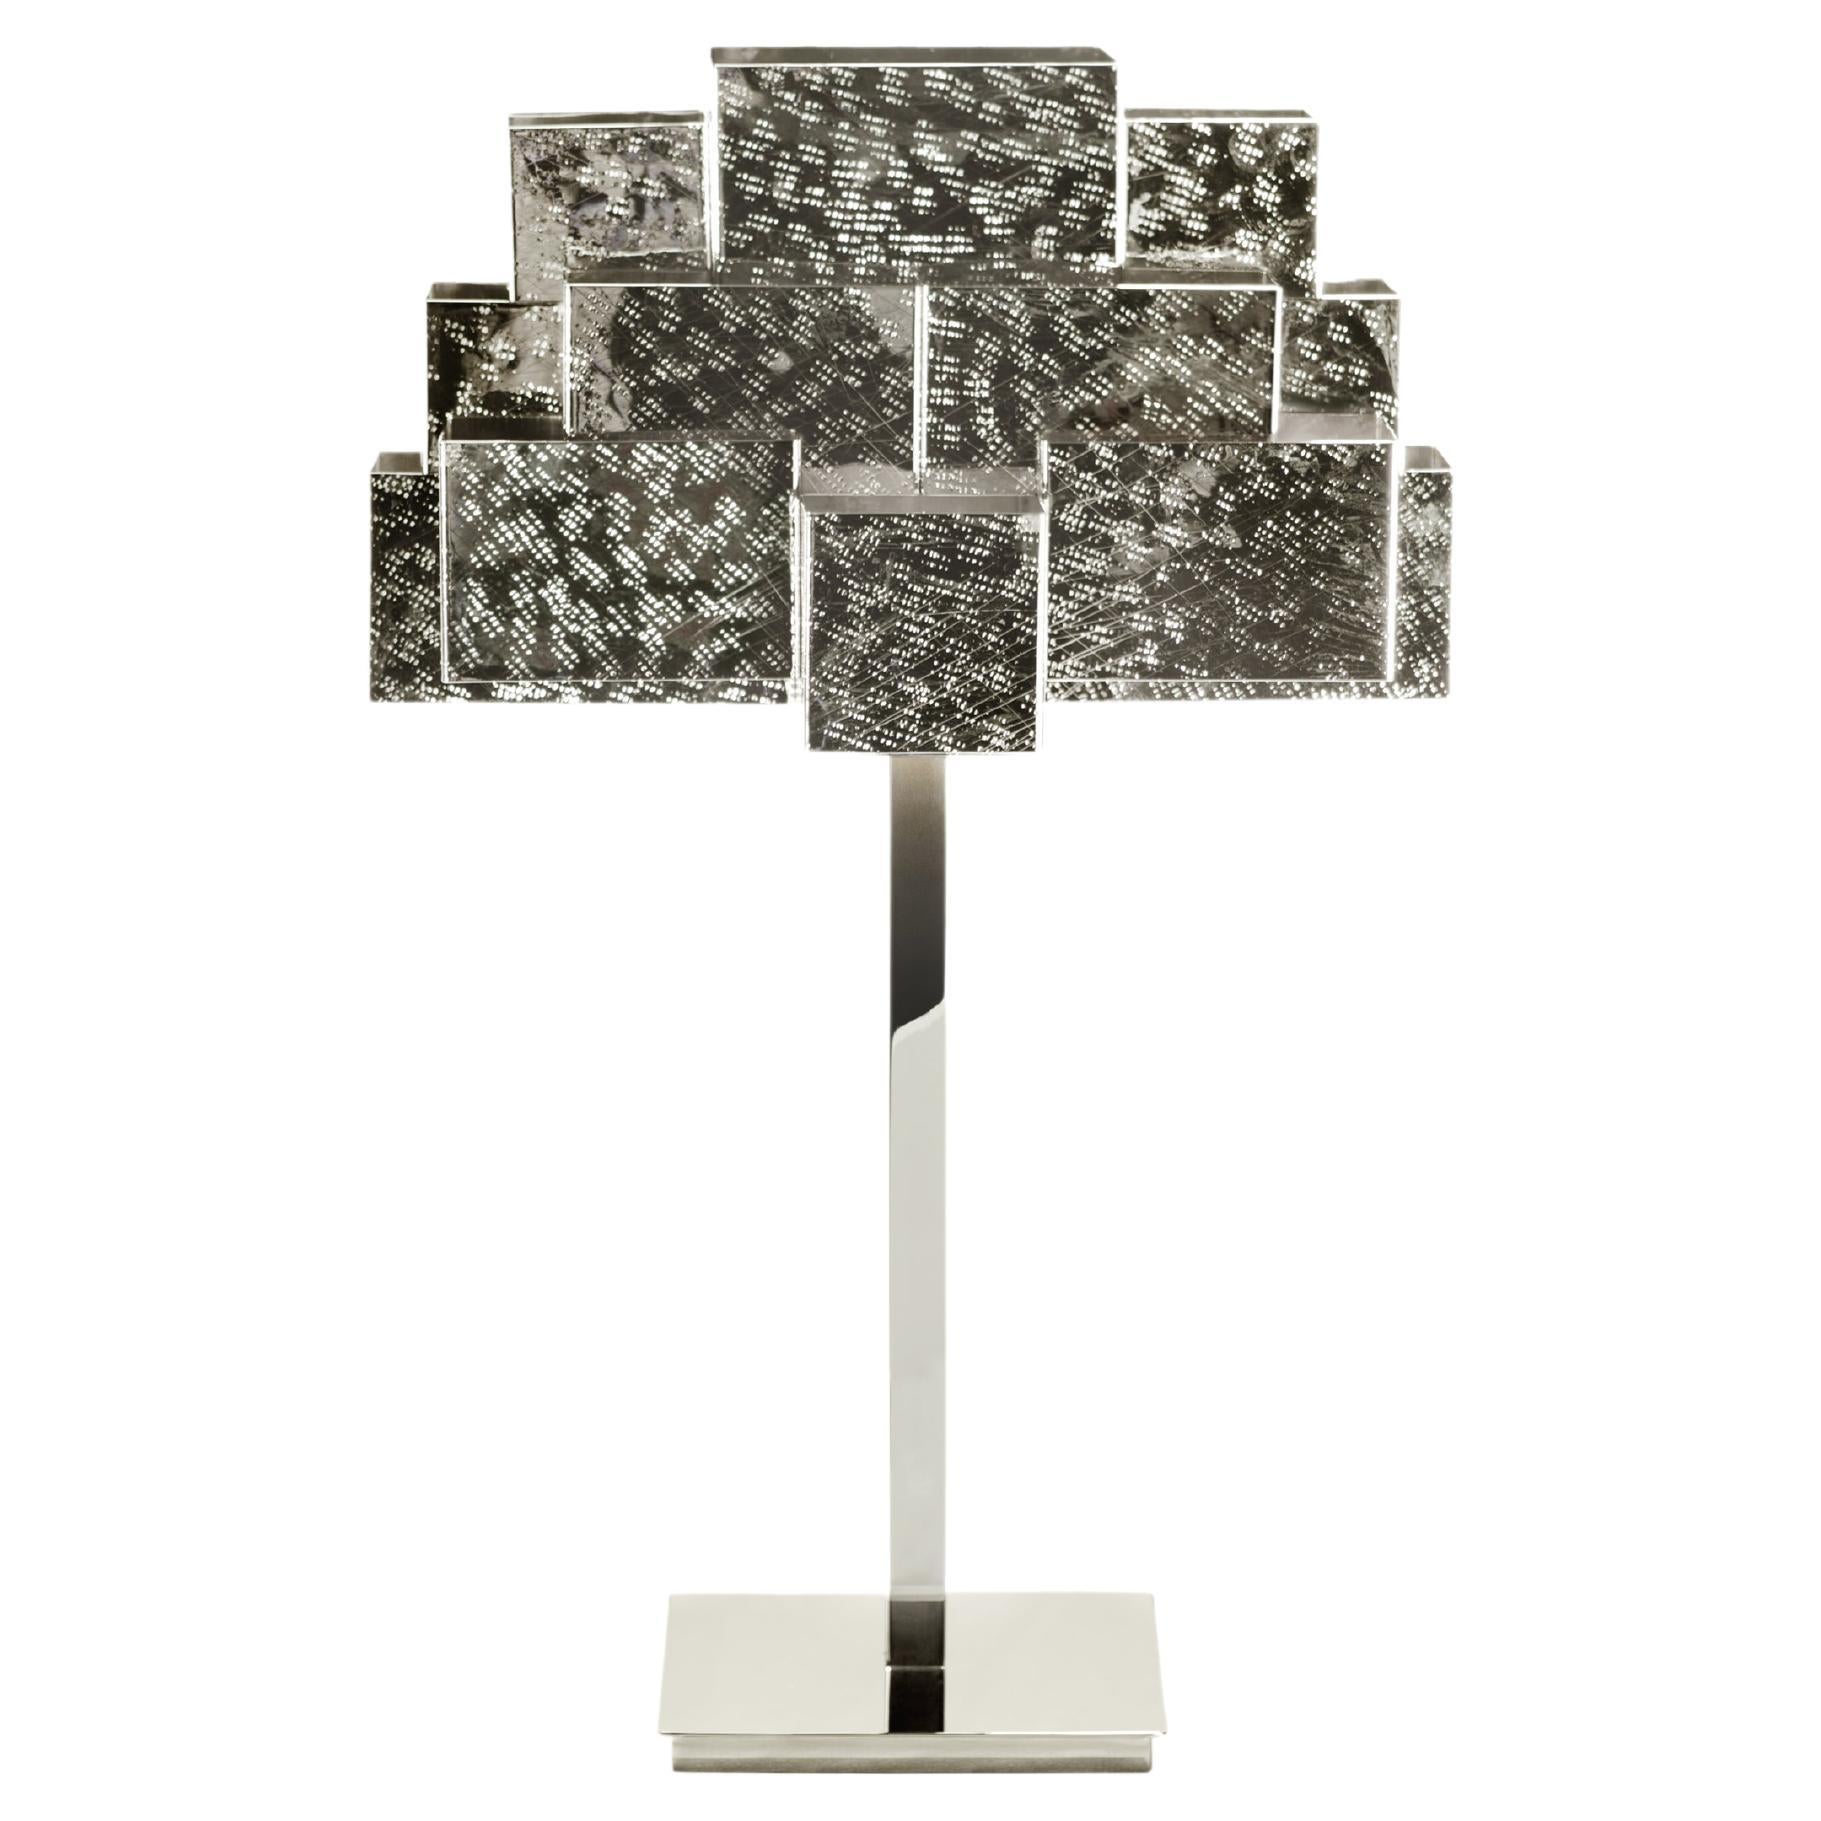 Inspirierende Trees-Tischlampe, Pricked Nickel, InsidherLand von Joana Santos Barbosa